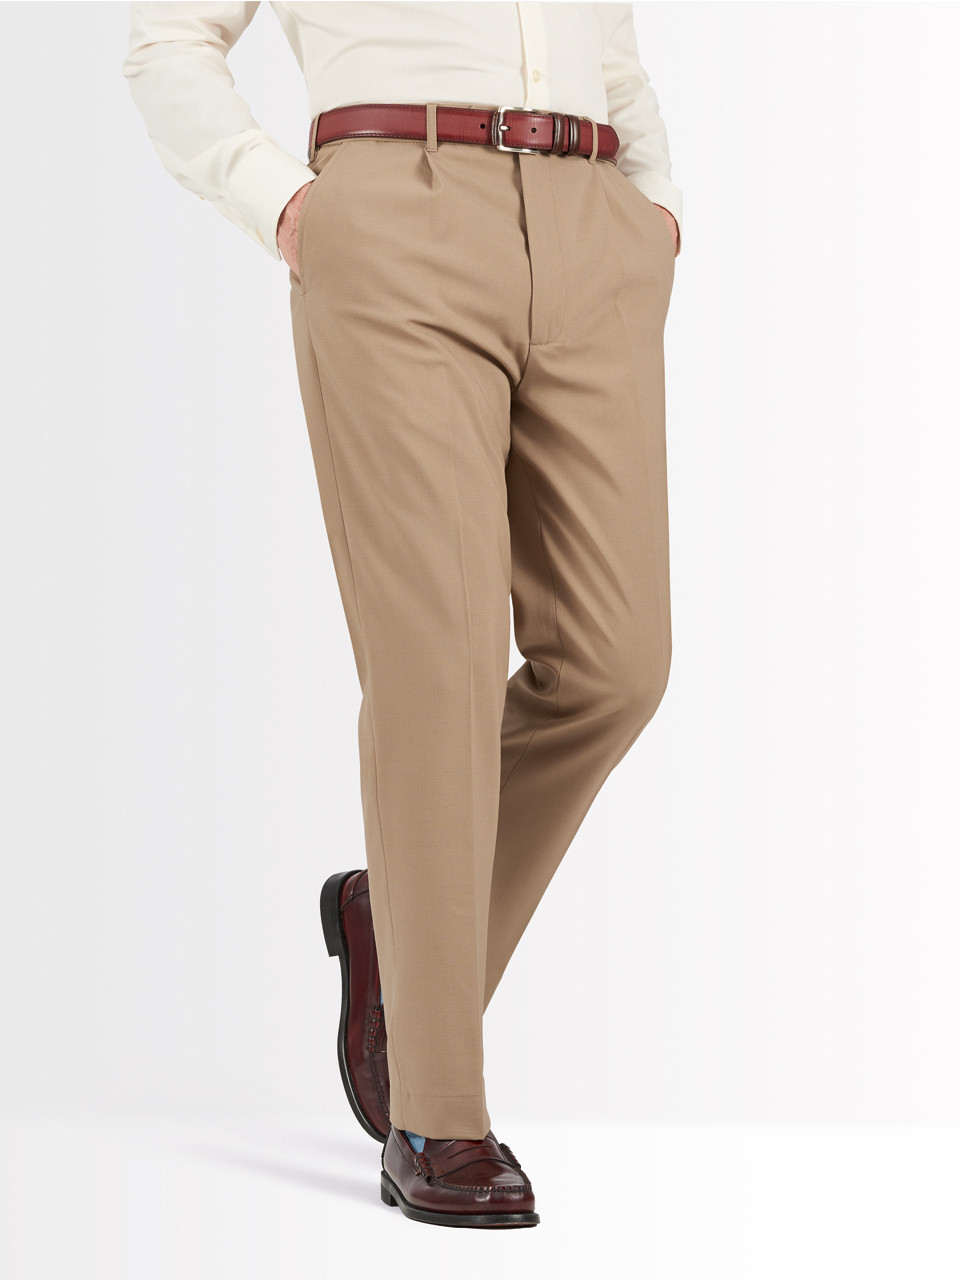 Buy Light Brown Trousers for Men